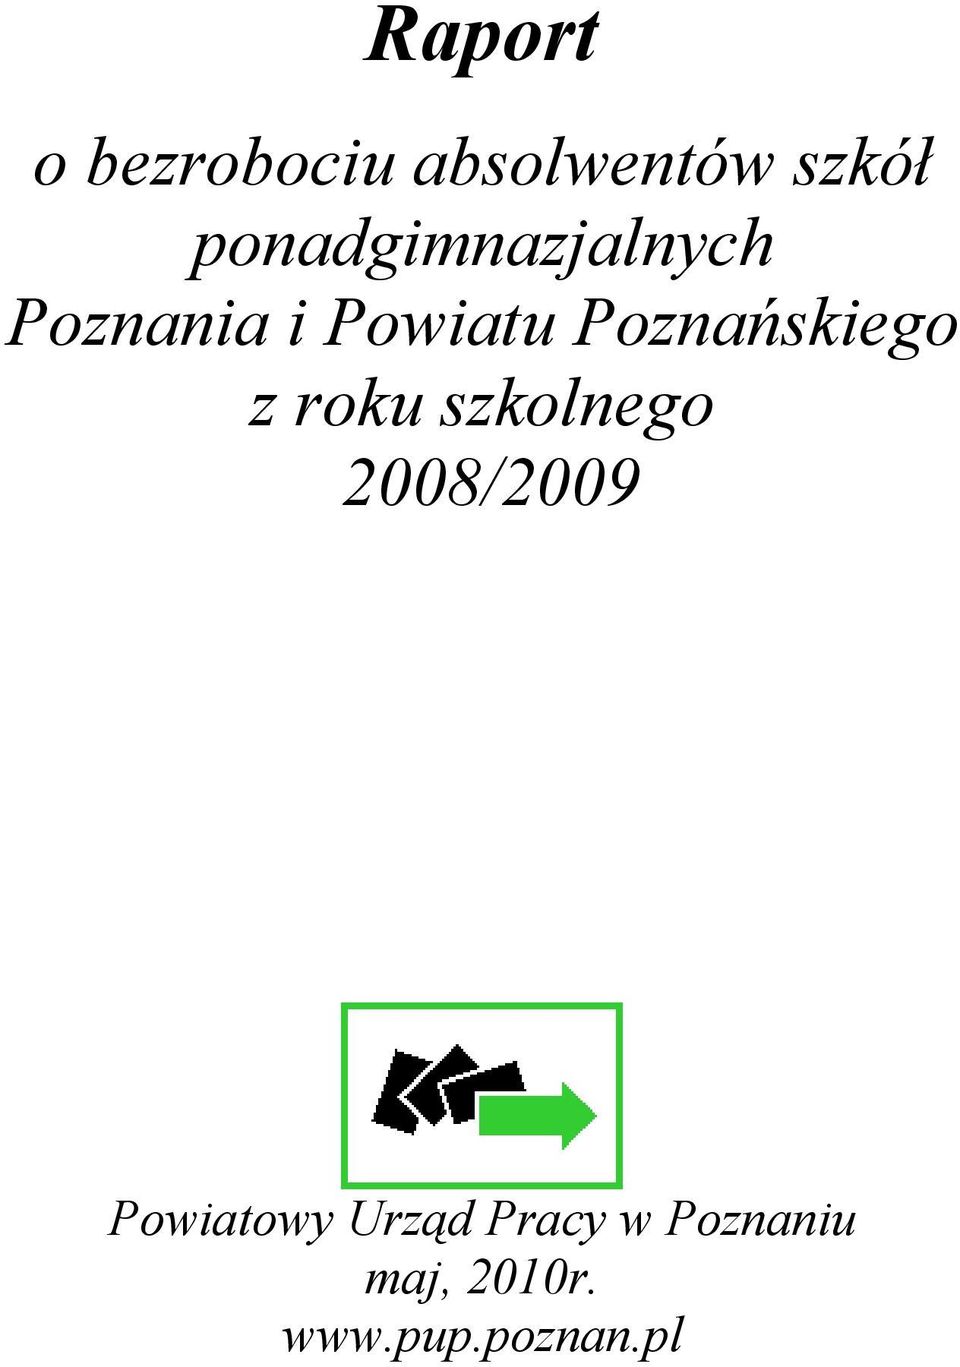 Poznańskiego z roku szkolnego 008/009